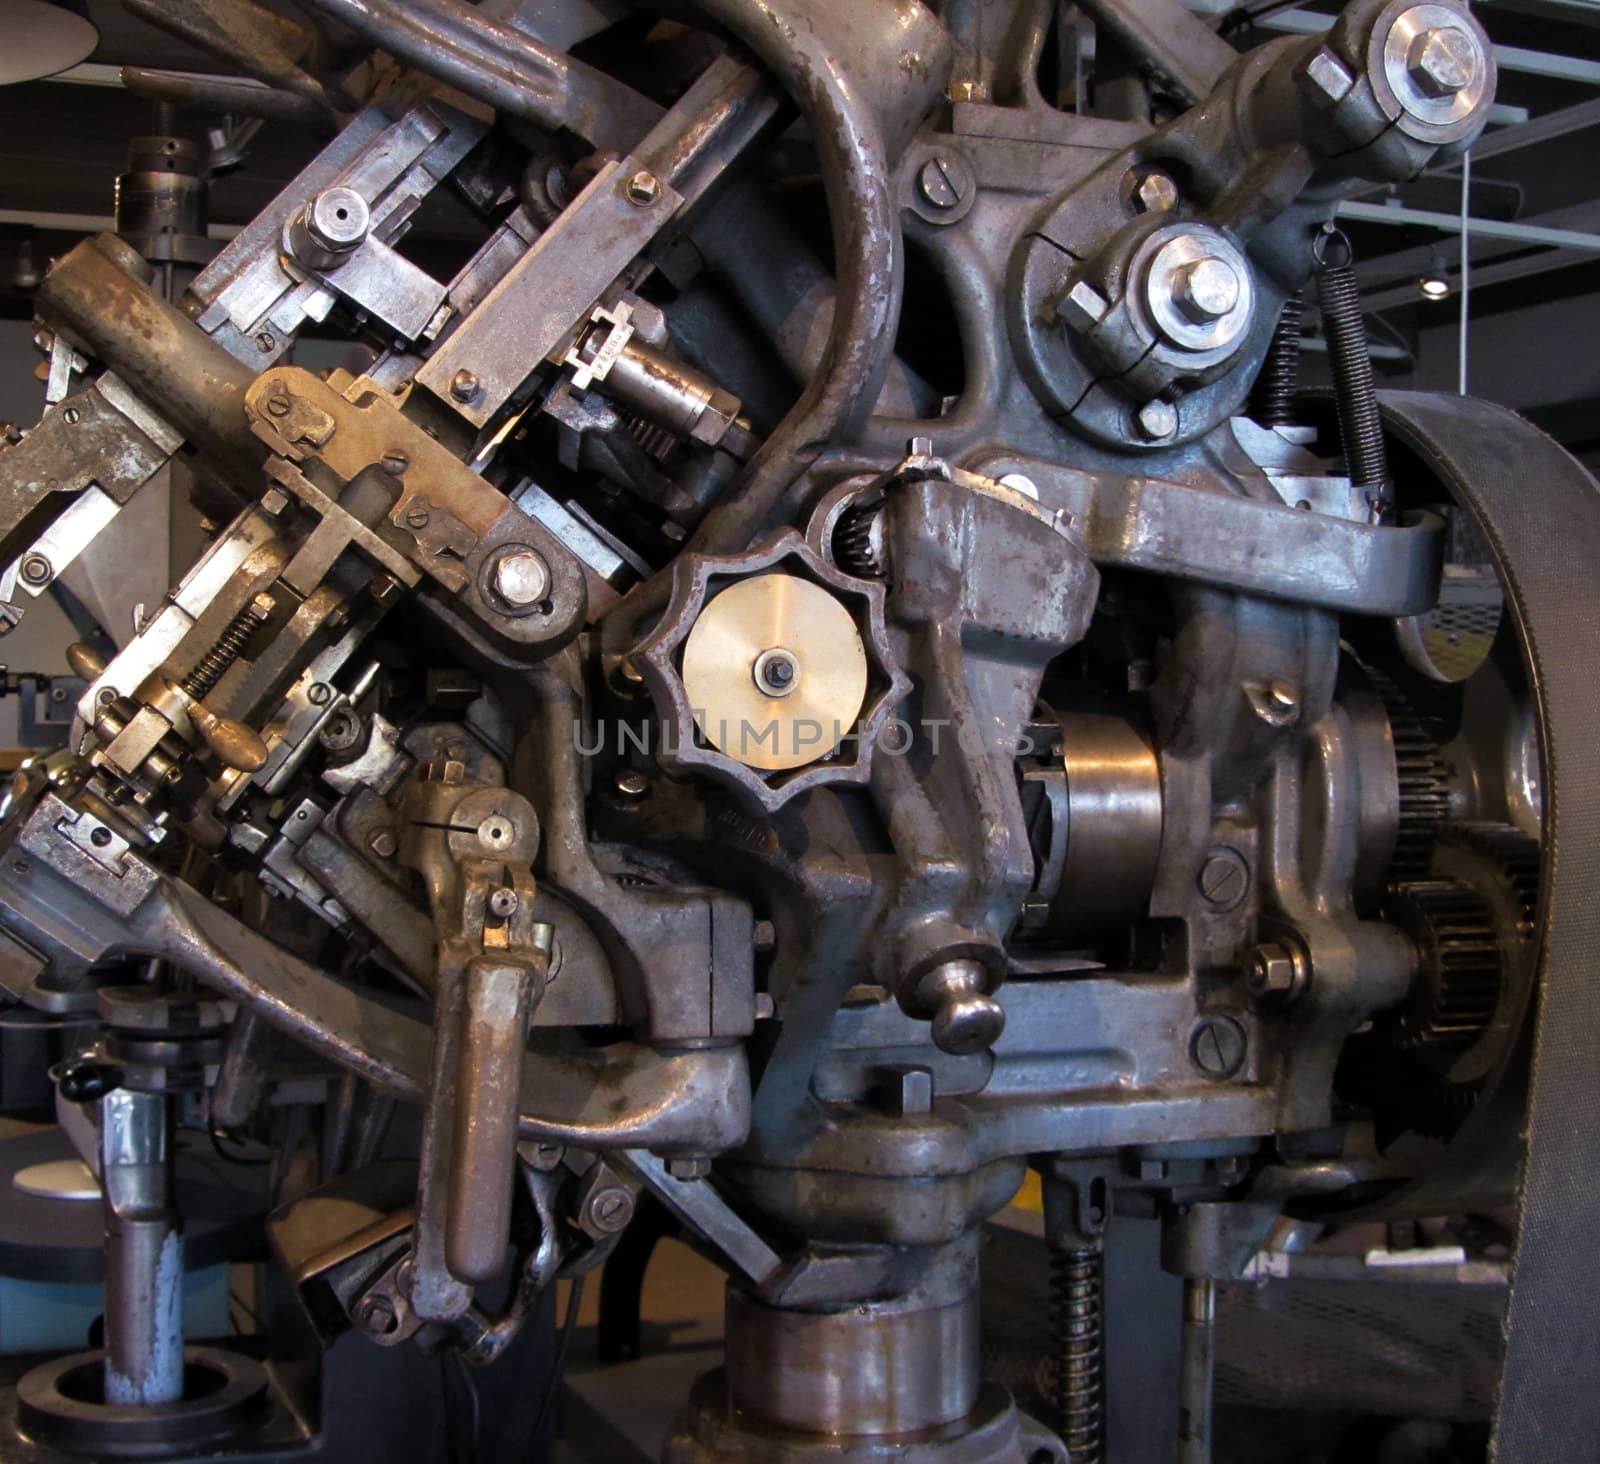 Old factory machine detail by anterovium